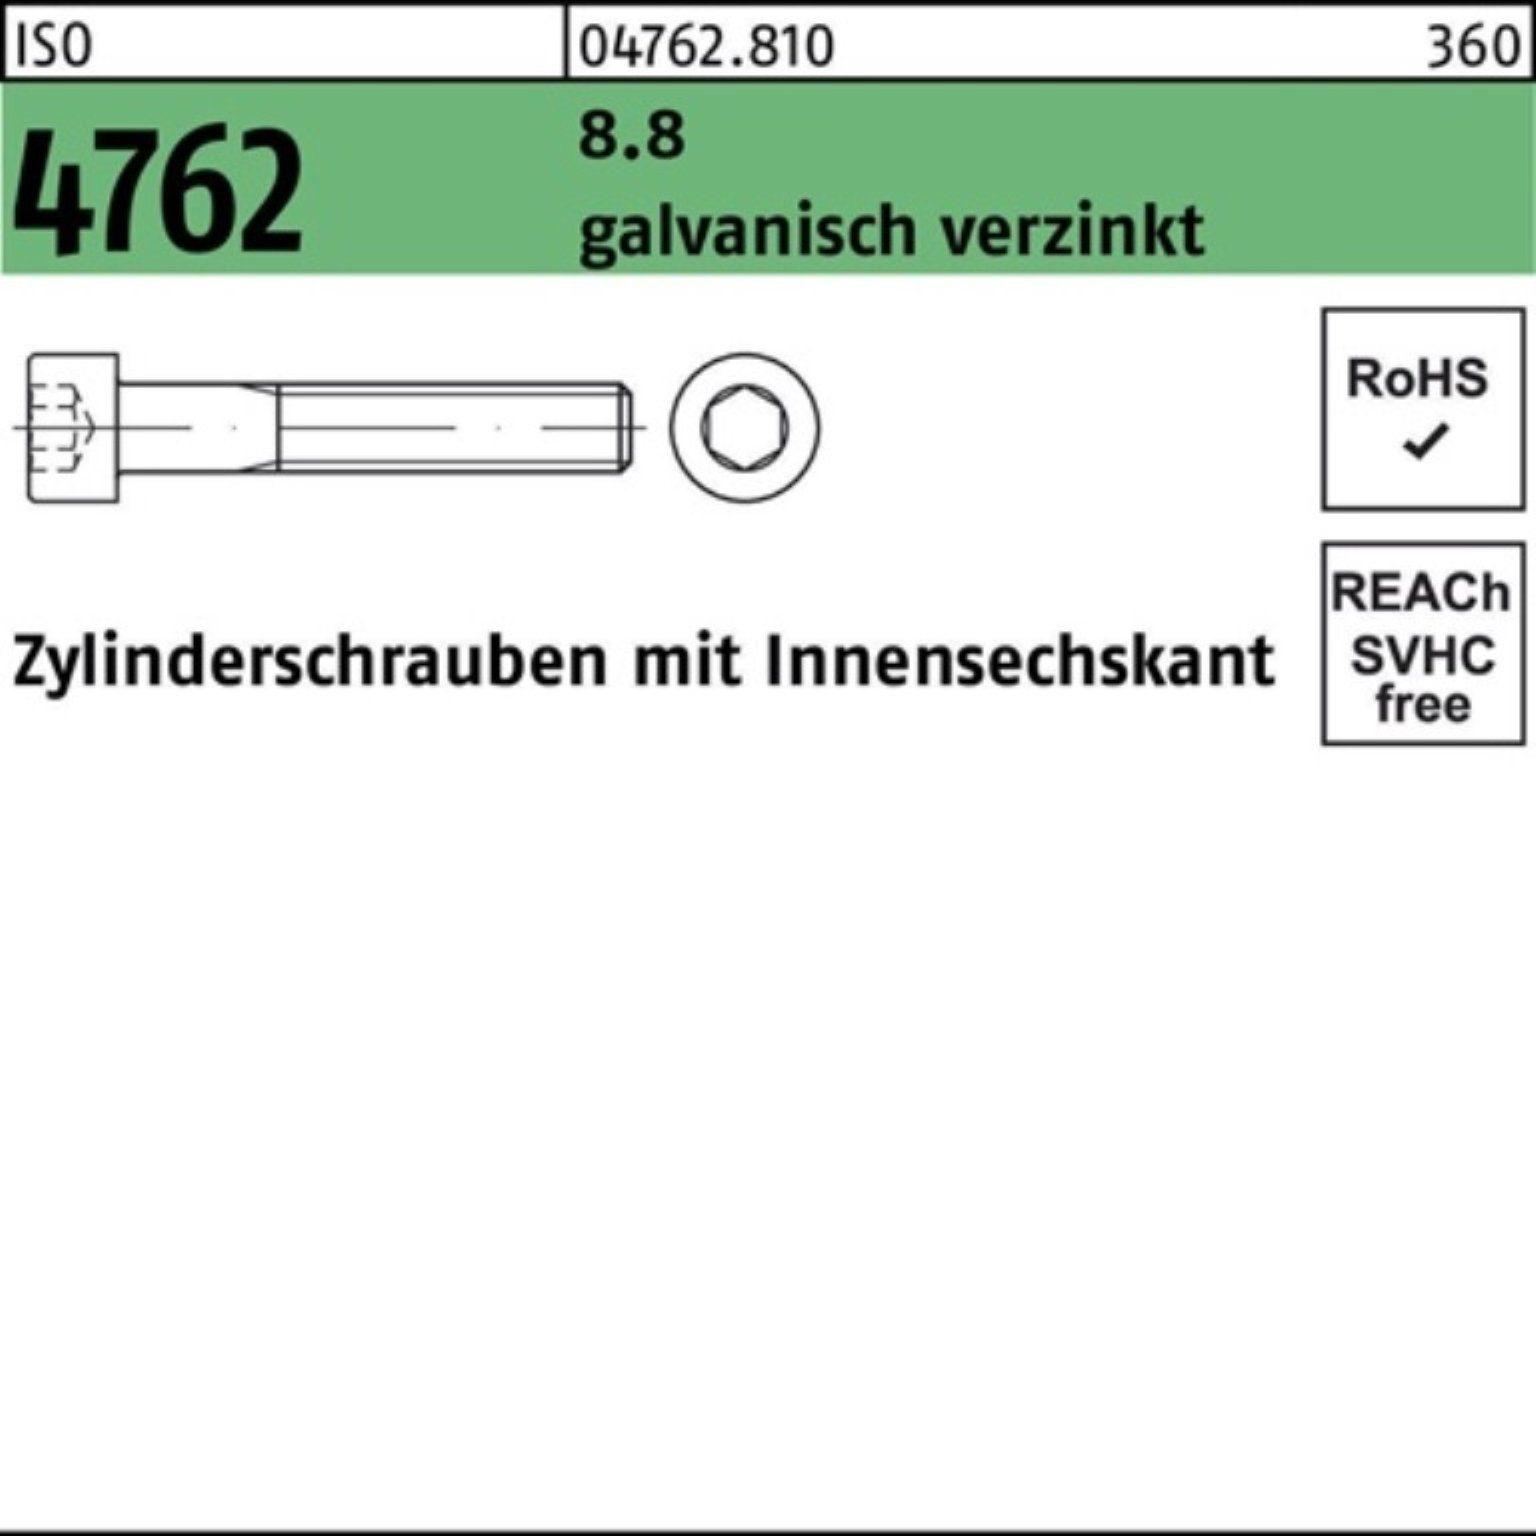 ISO Zylinderschraube 4762 8.8 100er Zylinderschraube 1 M6x145 galv.verz. Pack Reyher Innen-6kt